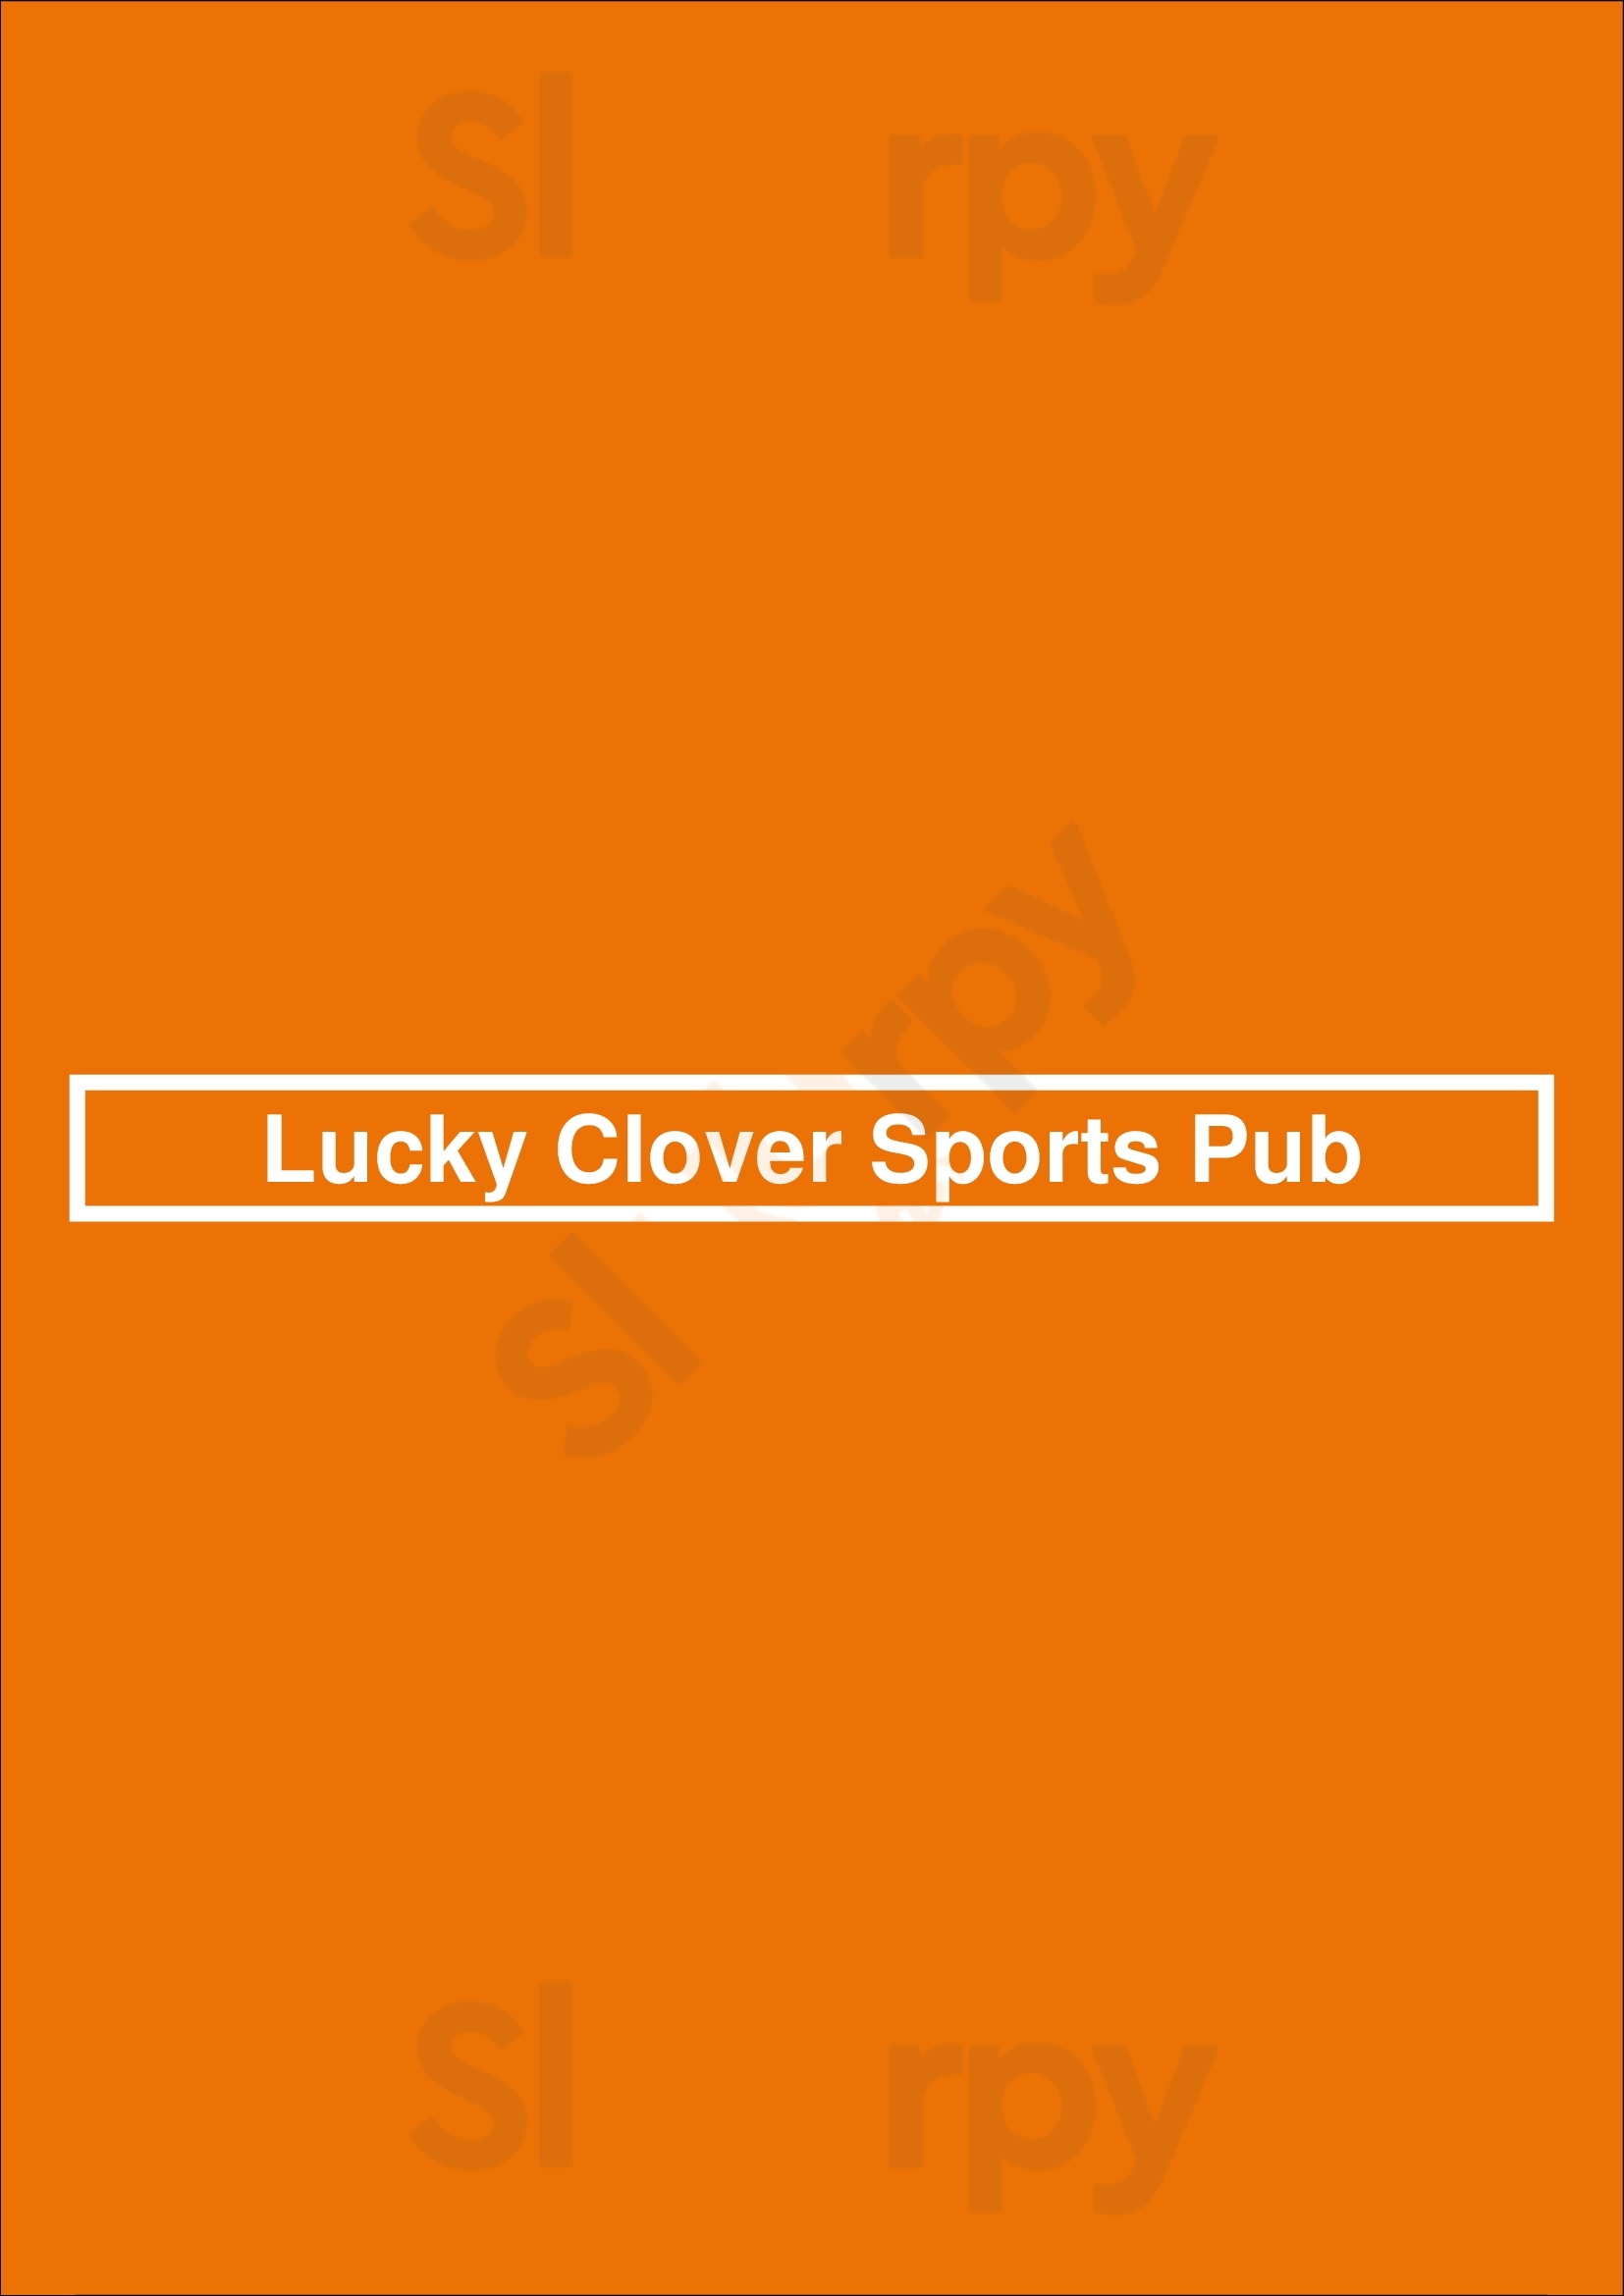 Lucky Clover Sports Pub Toronto Menu - 1